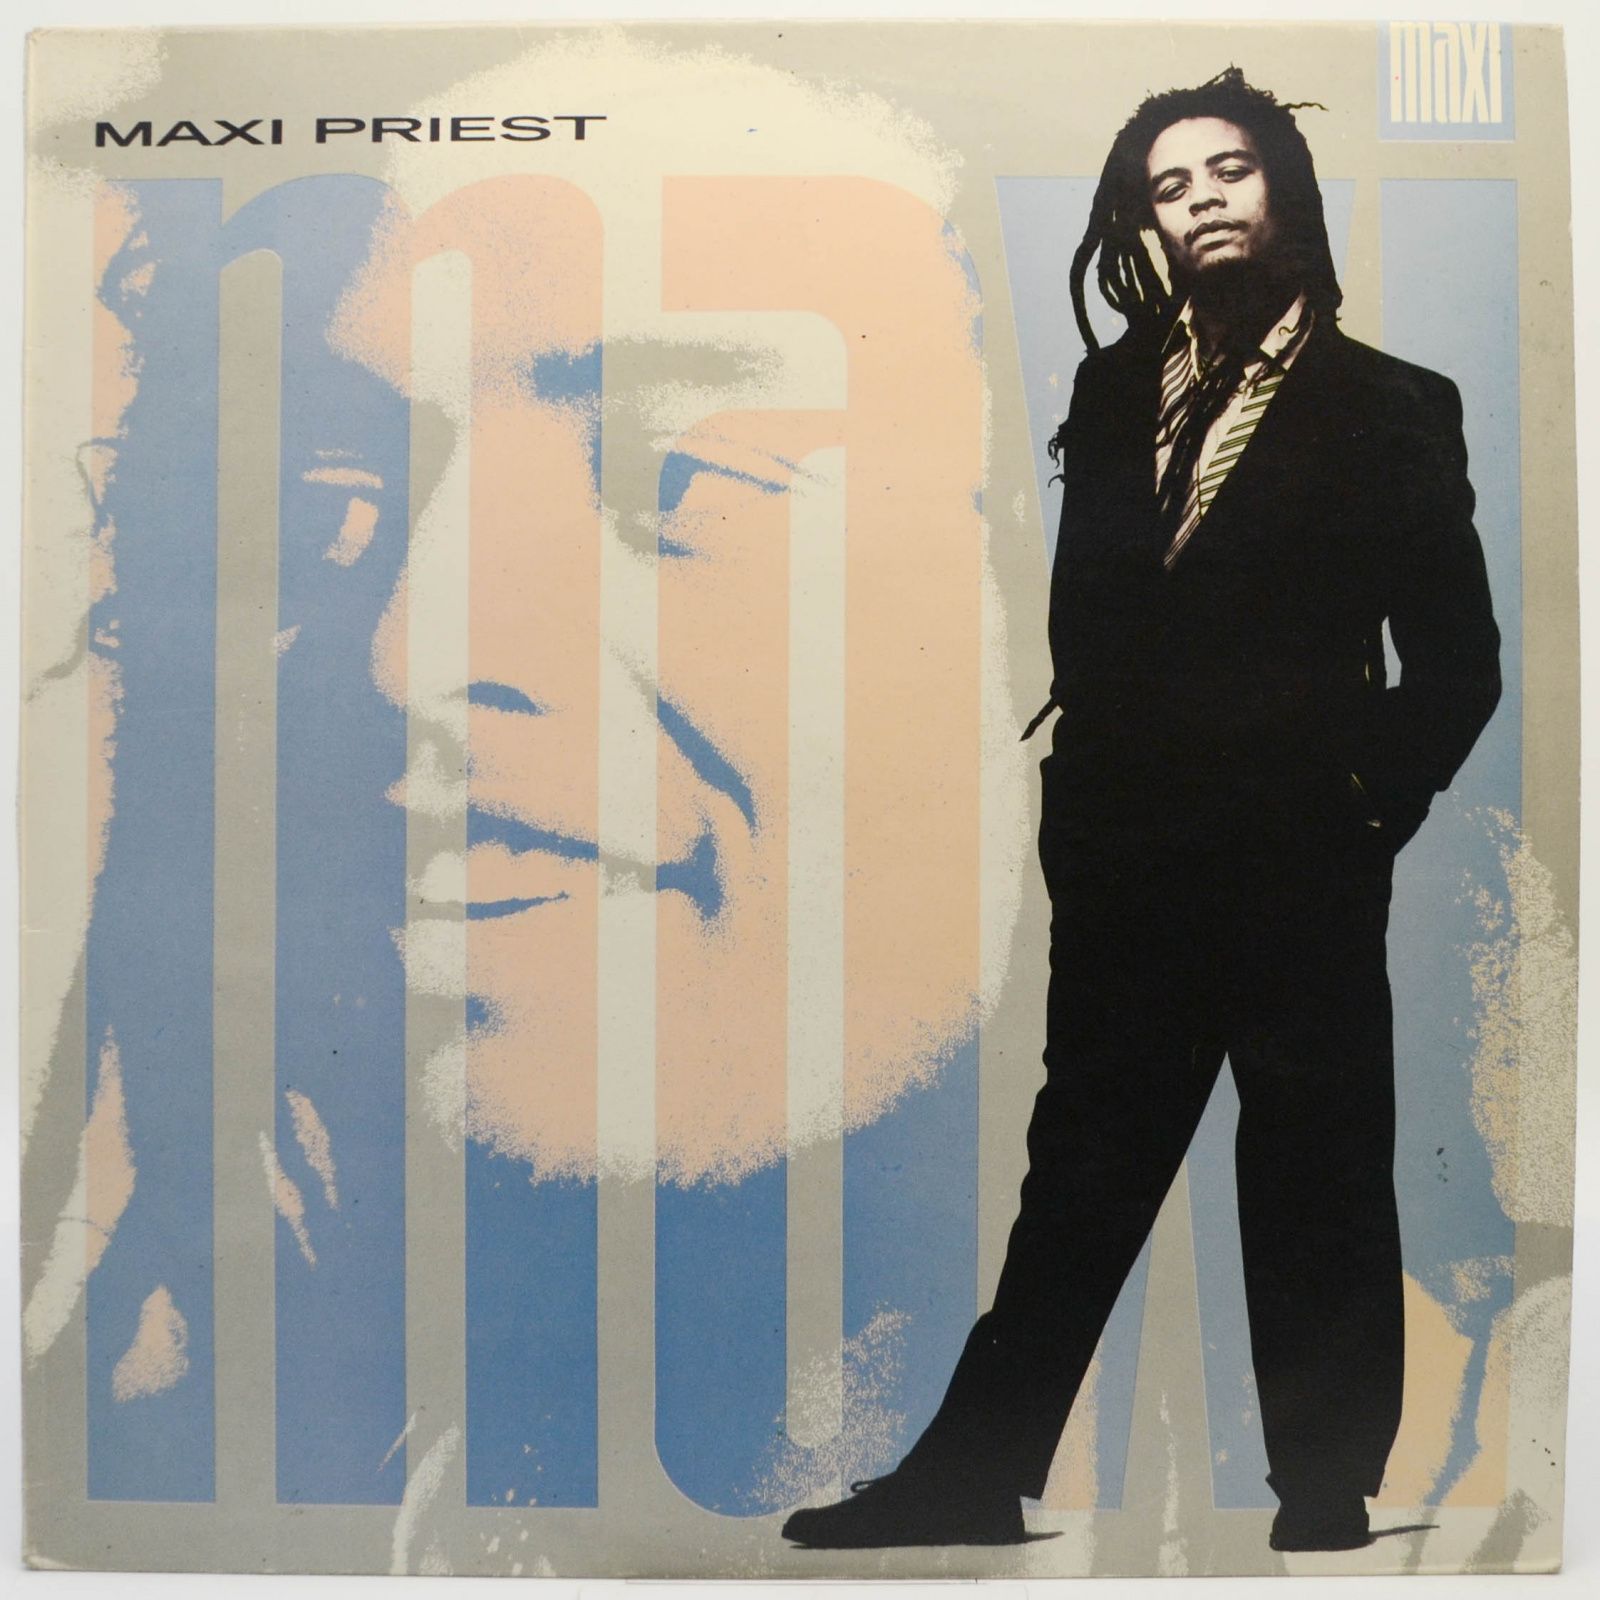 Maxi Priest — Maxi, 1987